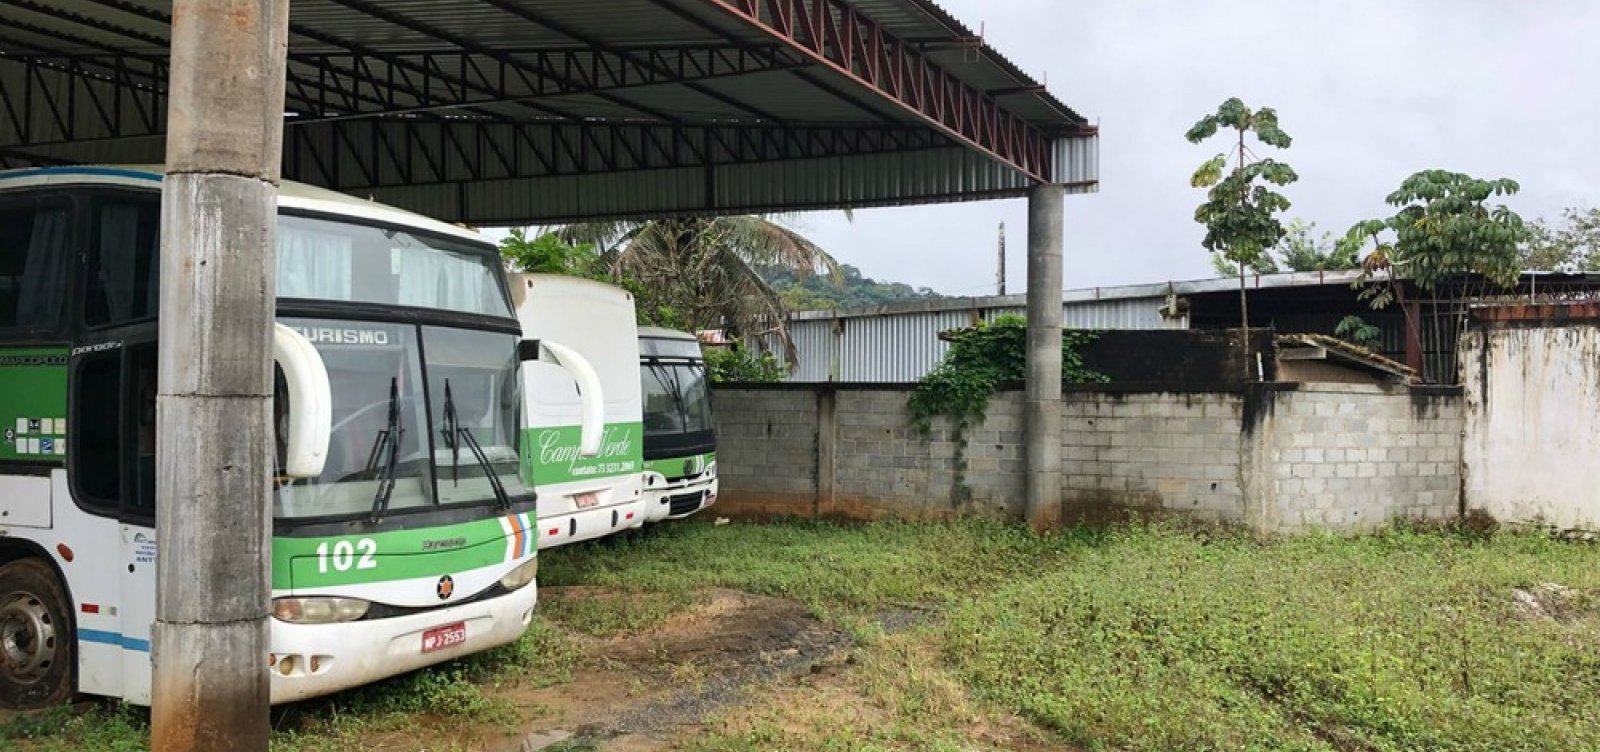 Homem é resgatado em condições análogas à escravidão em garagem de empresa de ônibus na Bahia